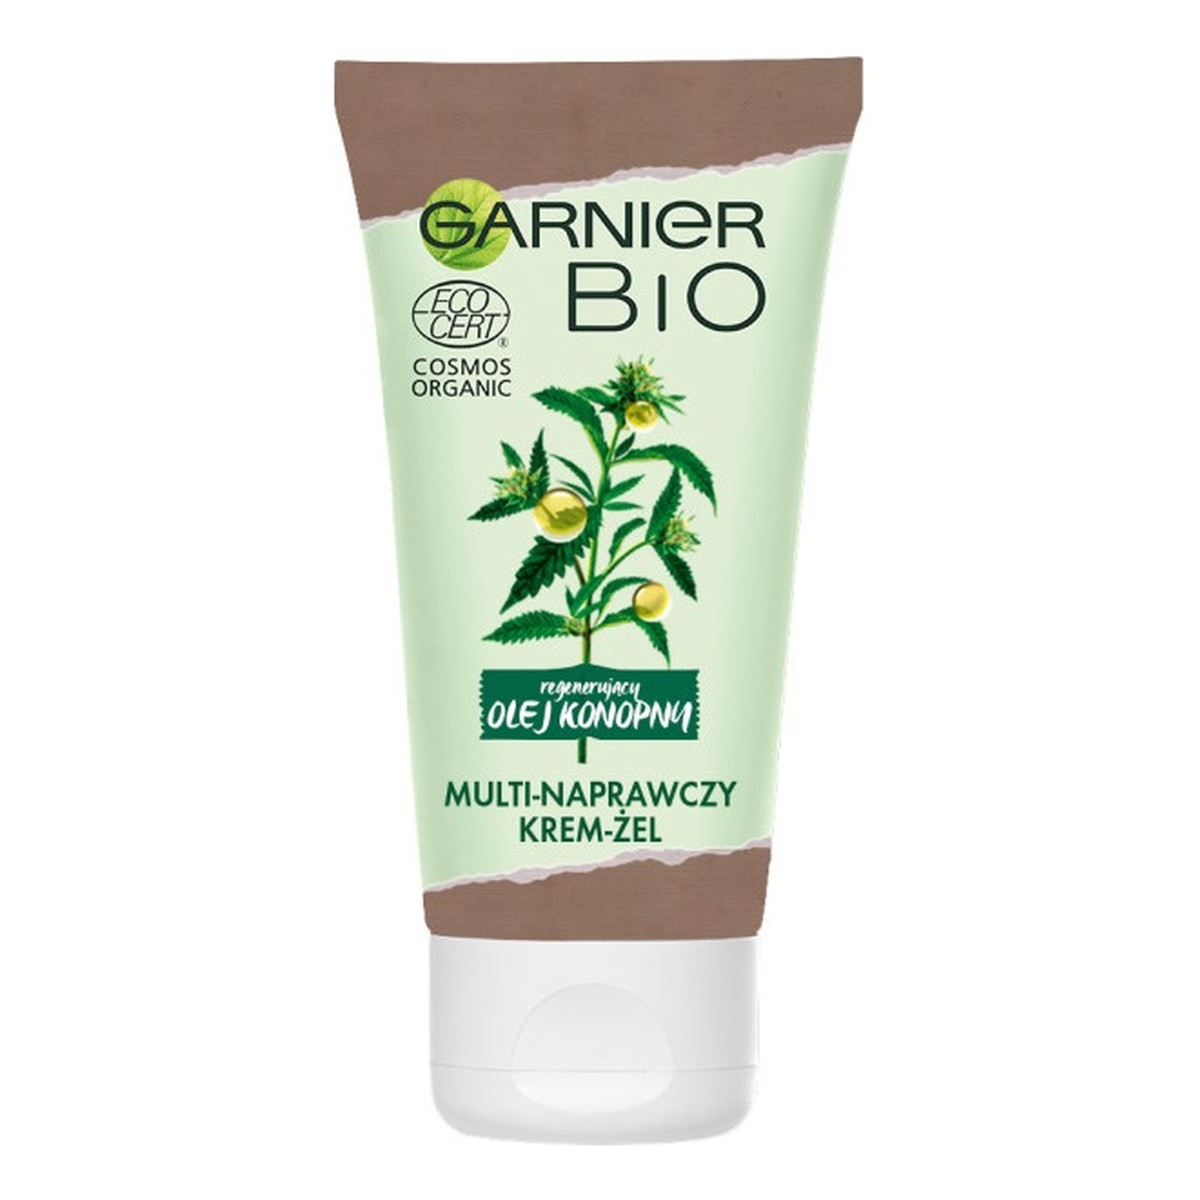 Garnier Bio Reparing Hemp Cream-Gel multi-naprawczy Żel-krem do twarzy dla skóry zmęczonej 50ml